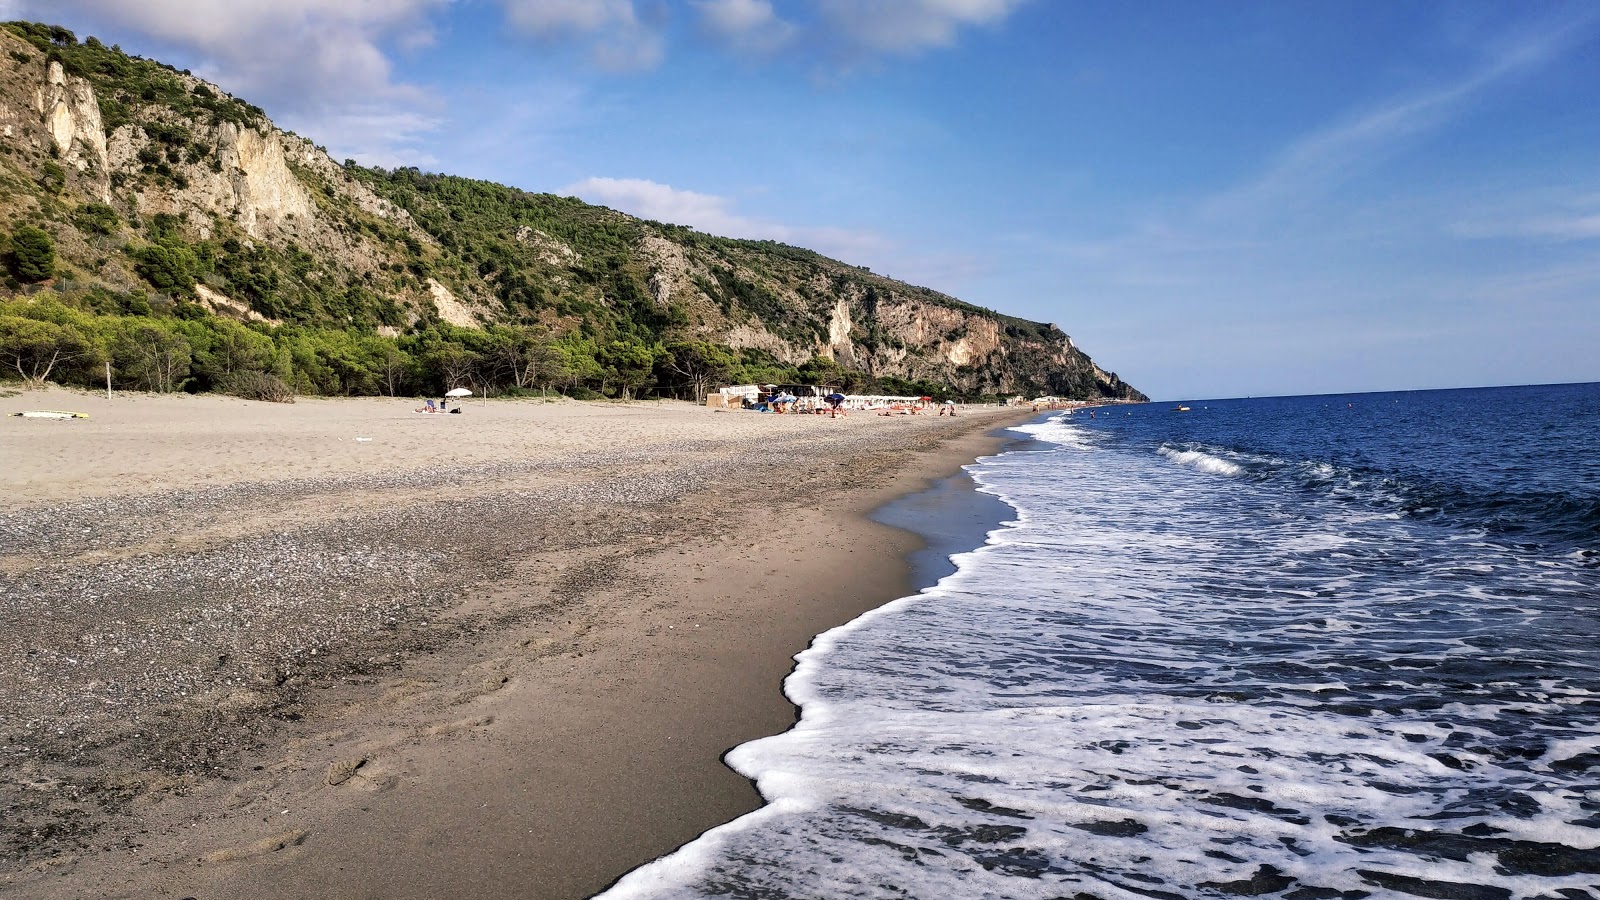 Melibea beach'in fotoğrafı kahverengi kum yüzey ile